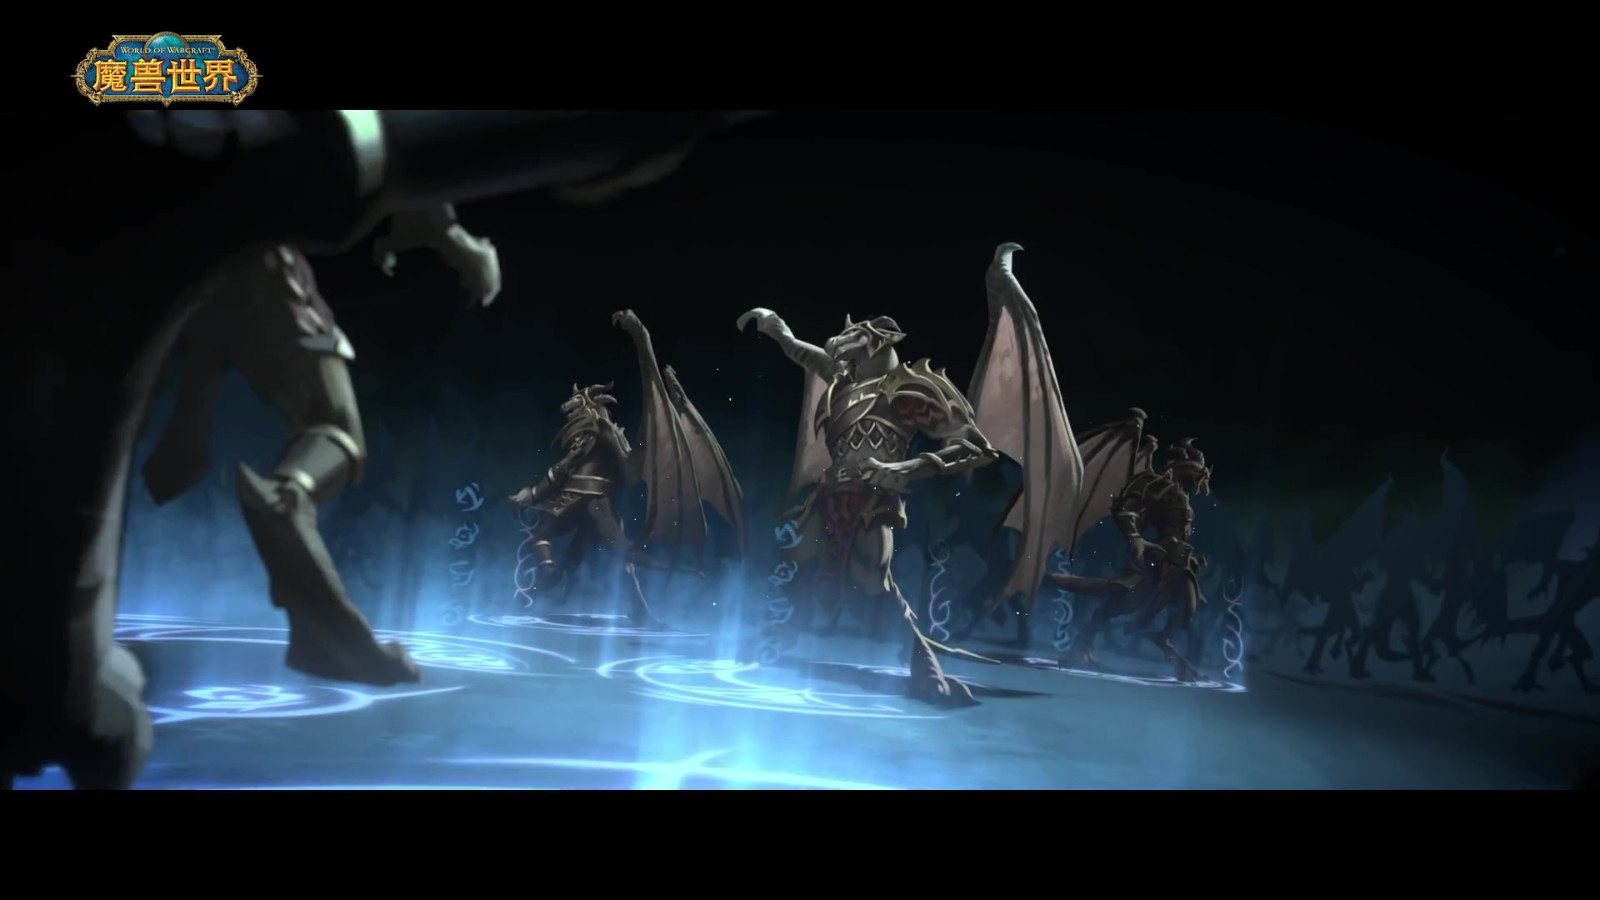 《魔兽世界》巨龙时代短片第三章 11月29日上线